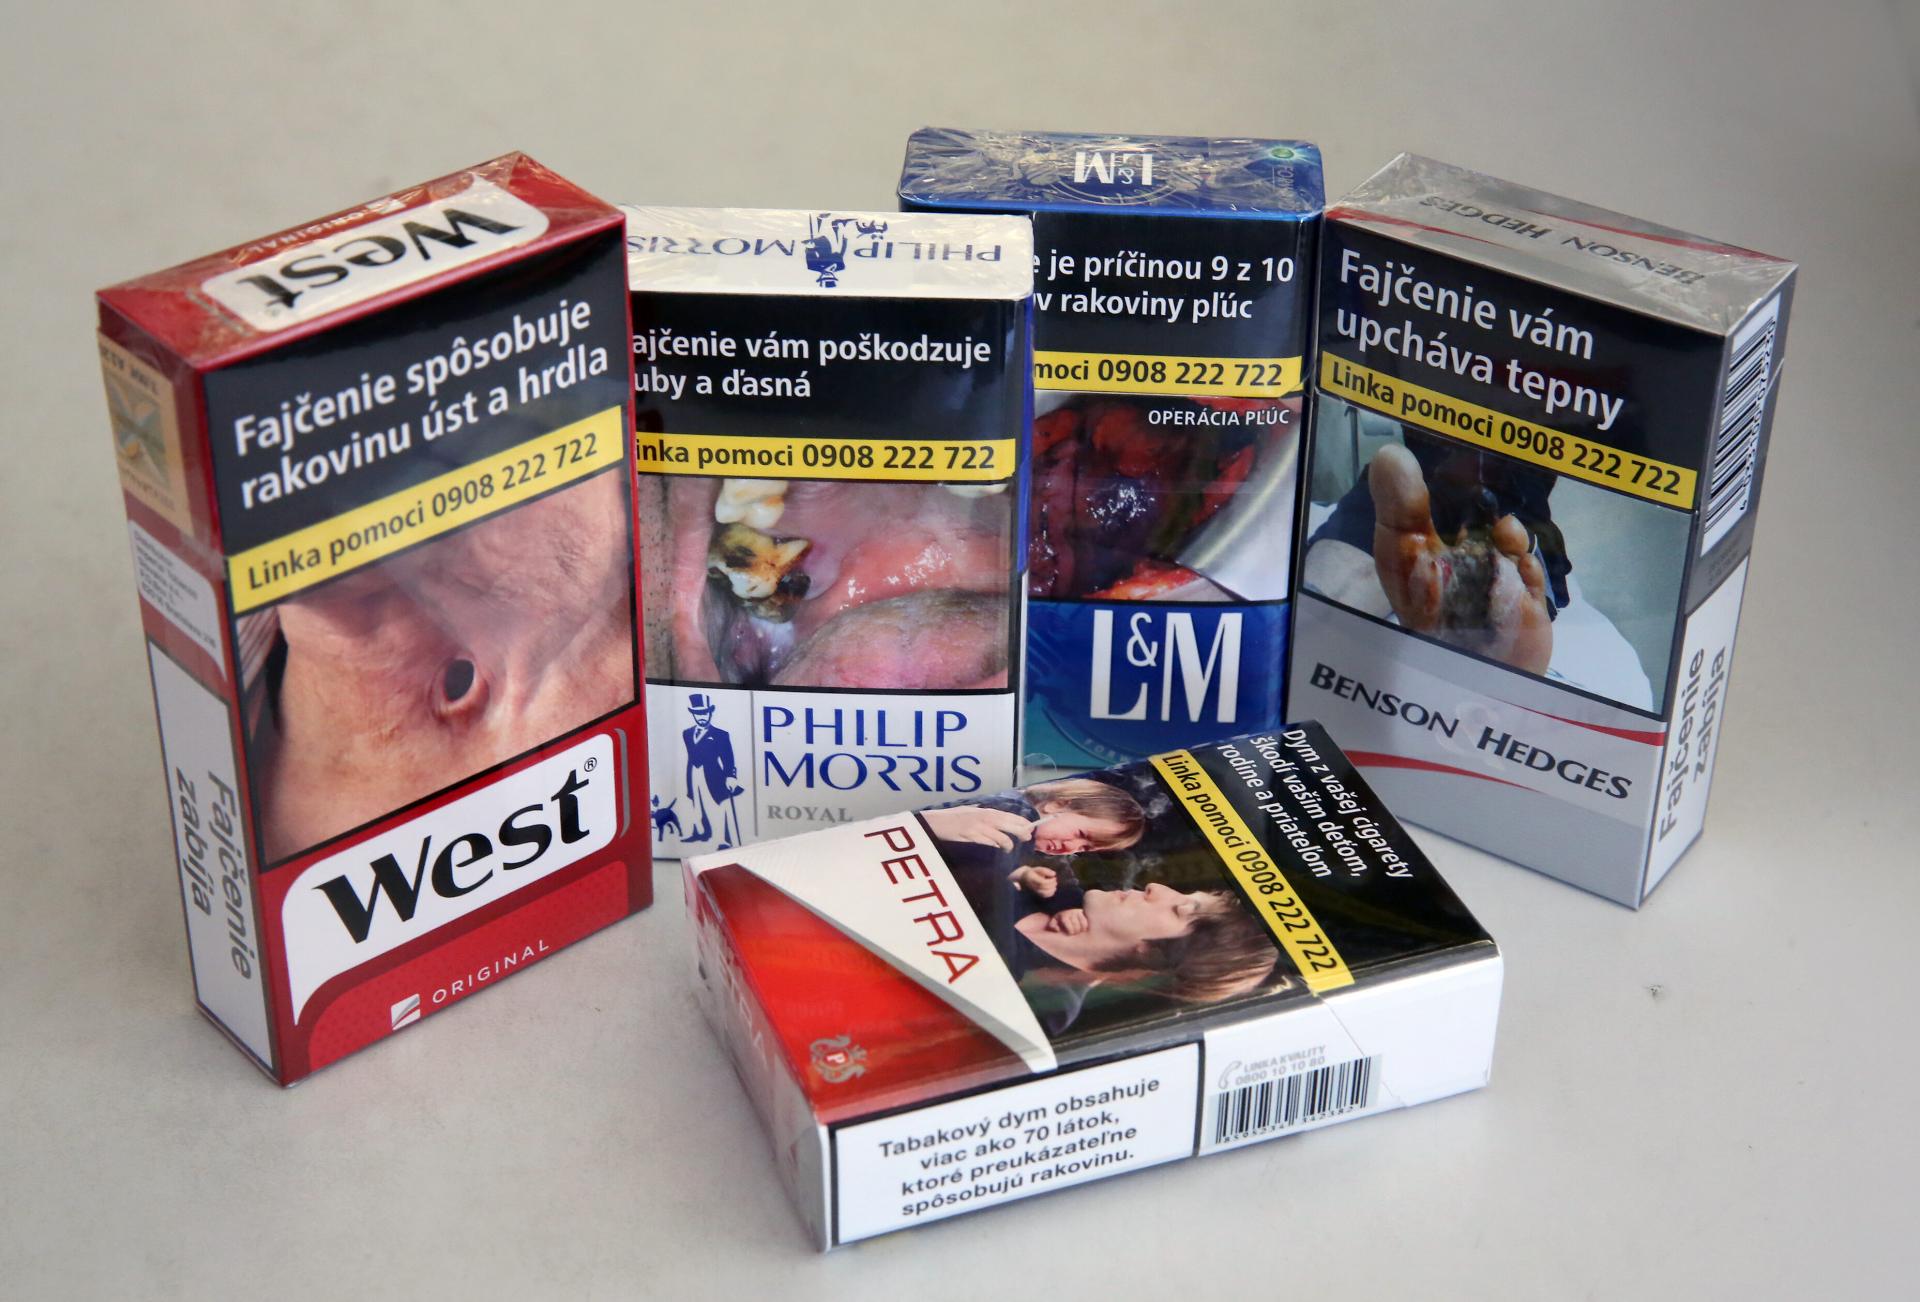 Finančná správa odhalila na východe nelegálny biznis s cigaretami